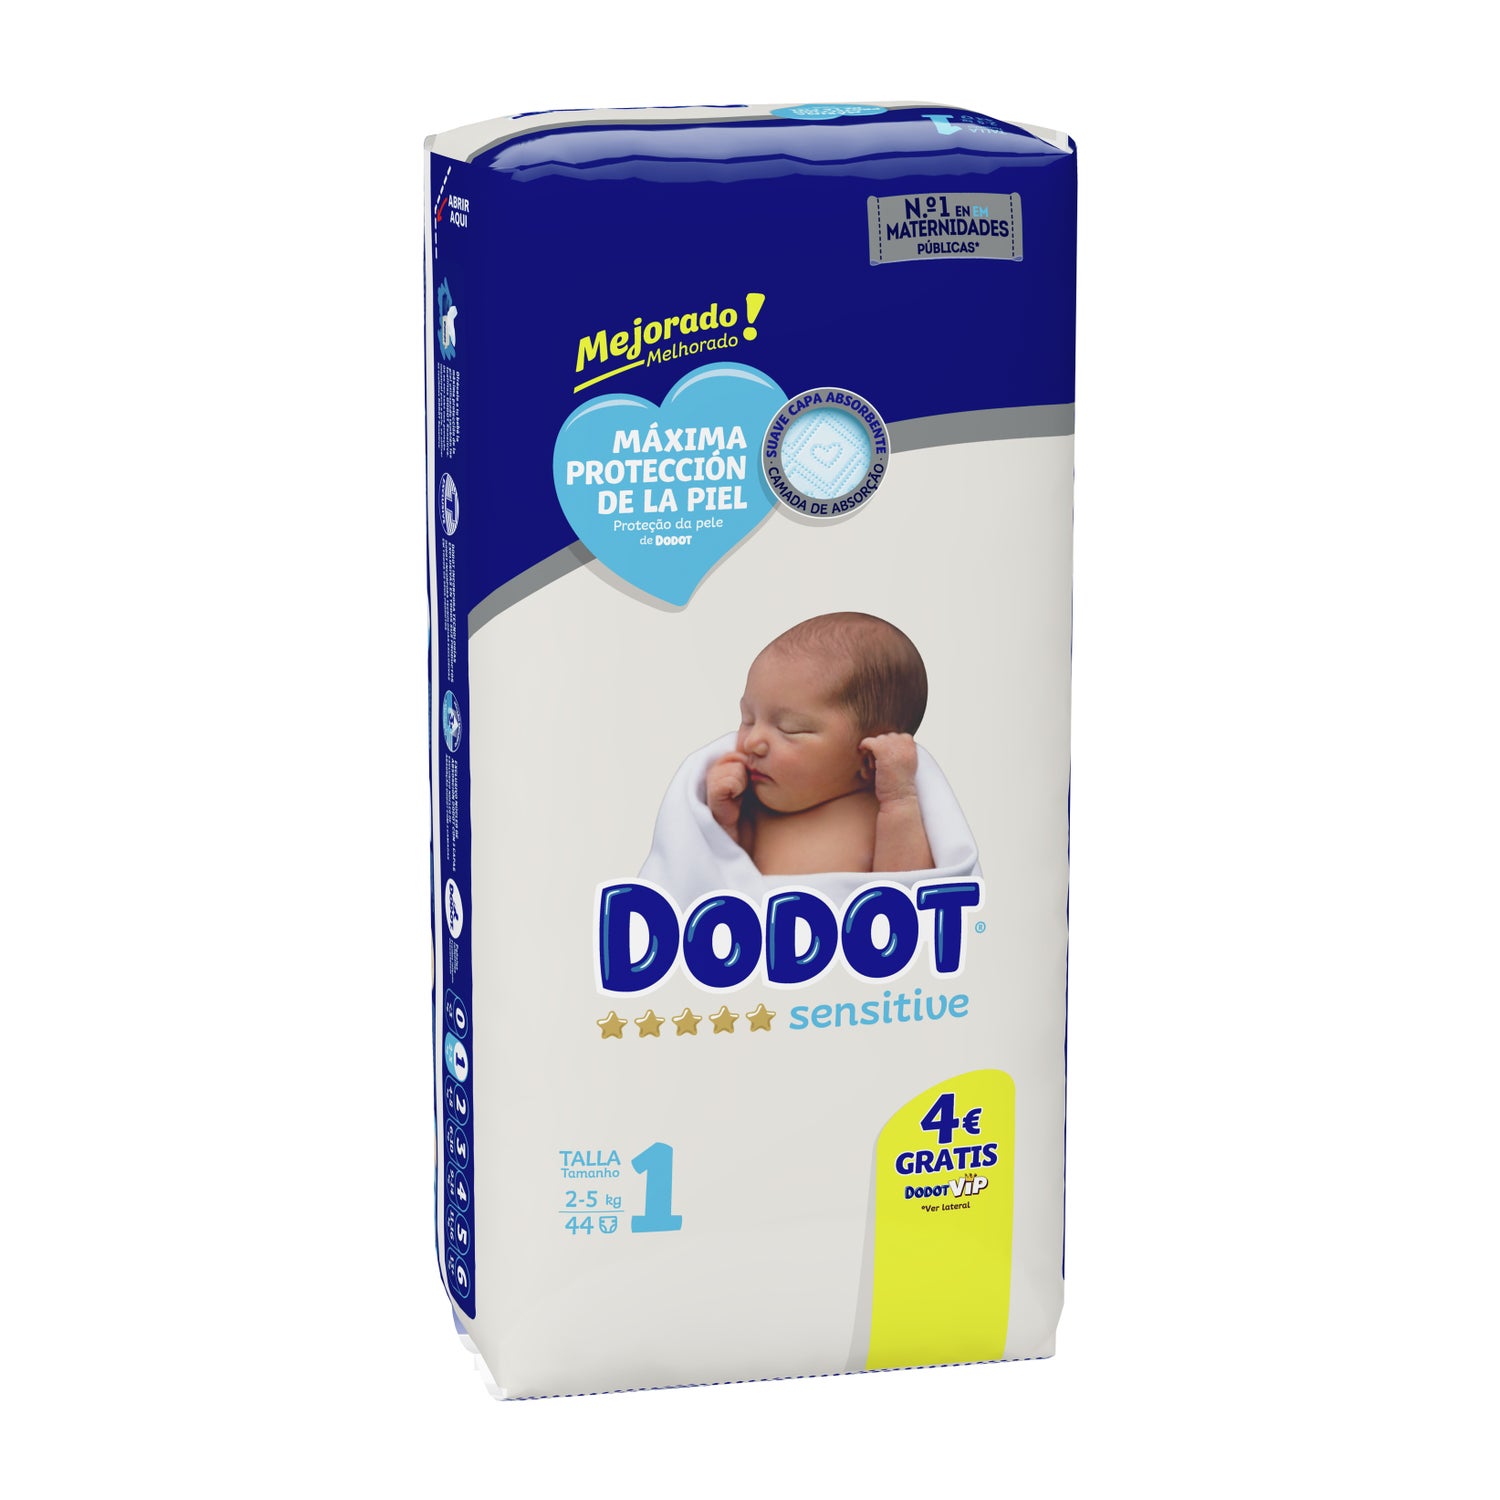 Dodot® Pro-Sensitive+ Pañales Talla 2, 36 unidades